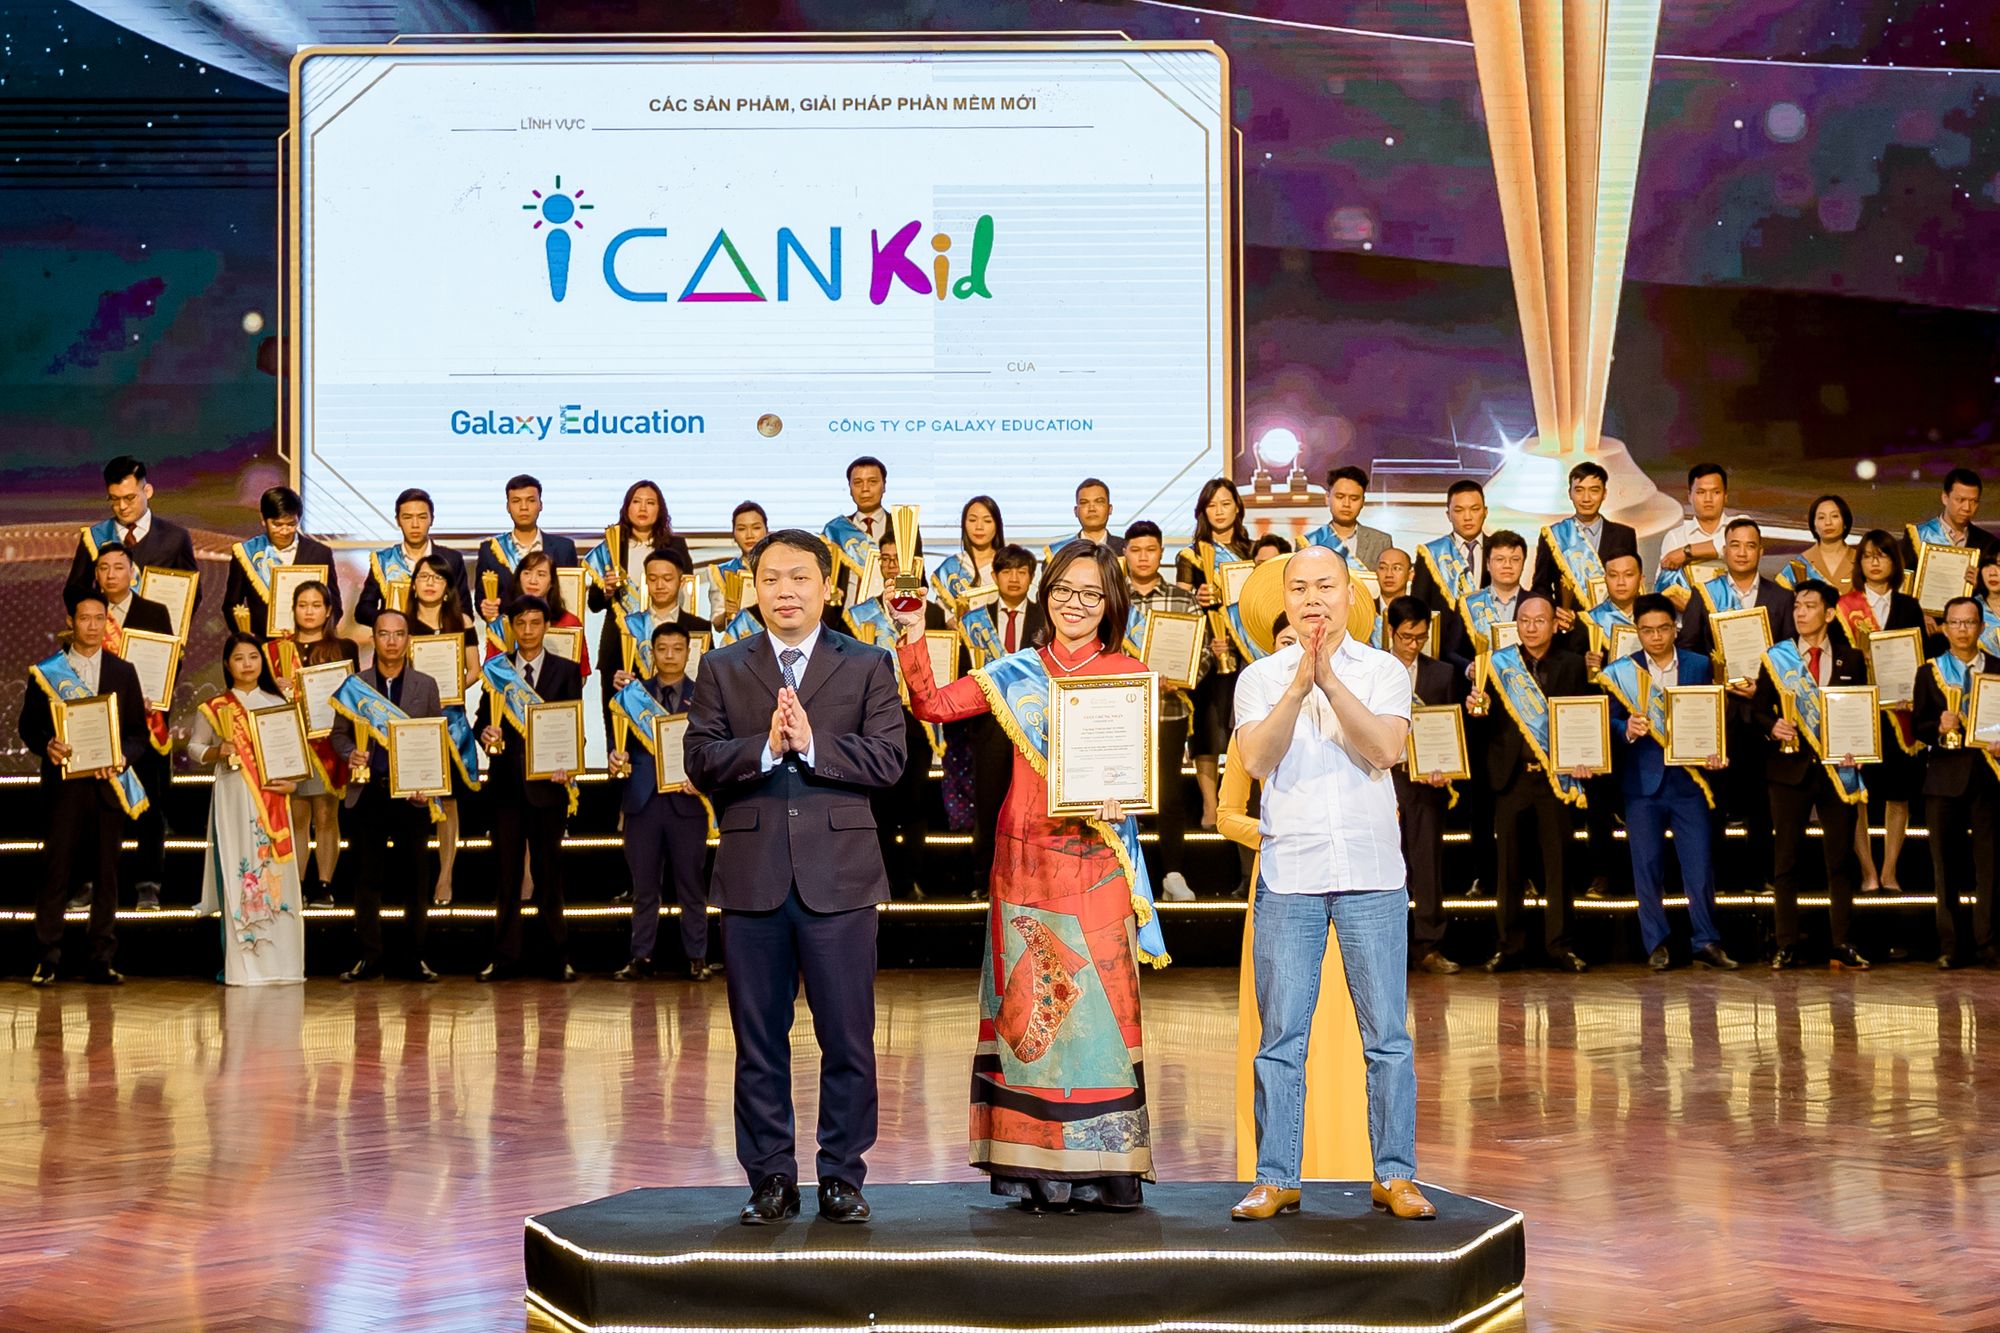 ICANKid xuất sắc nhận Giải thưởng Sao Khuê 2022 danh giá nhất ngành phần mềm và CNTT Việt Nam, chỉ sau 1 năm ra mắt